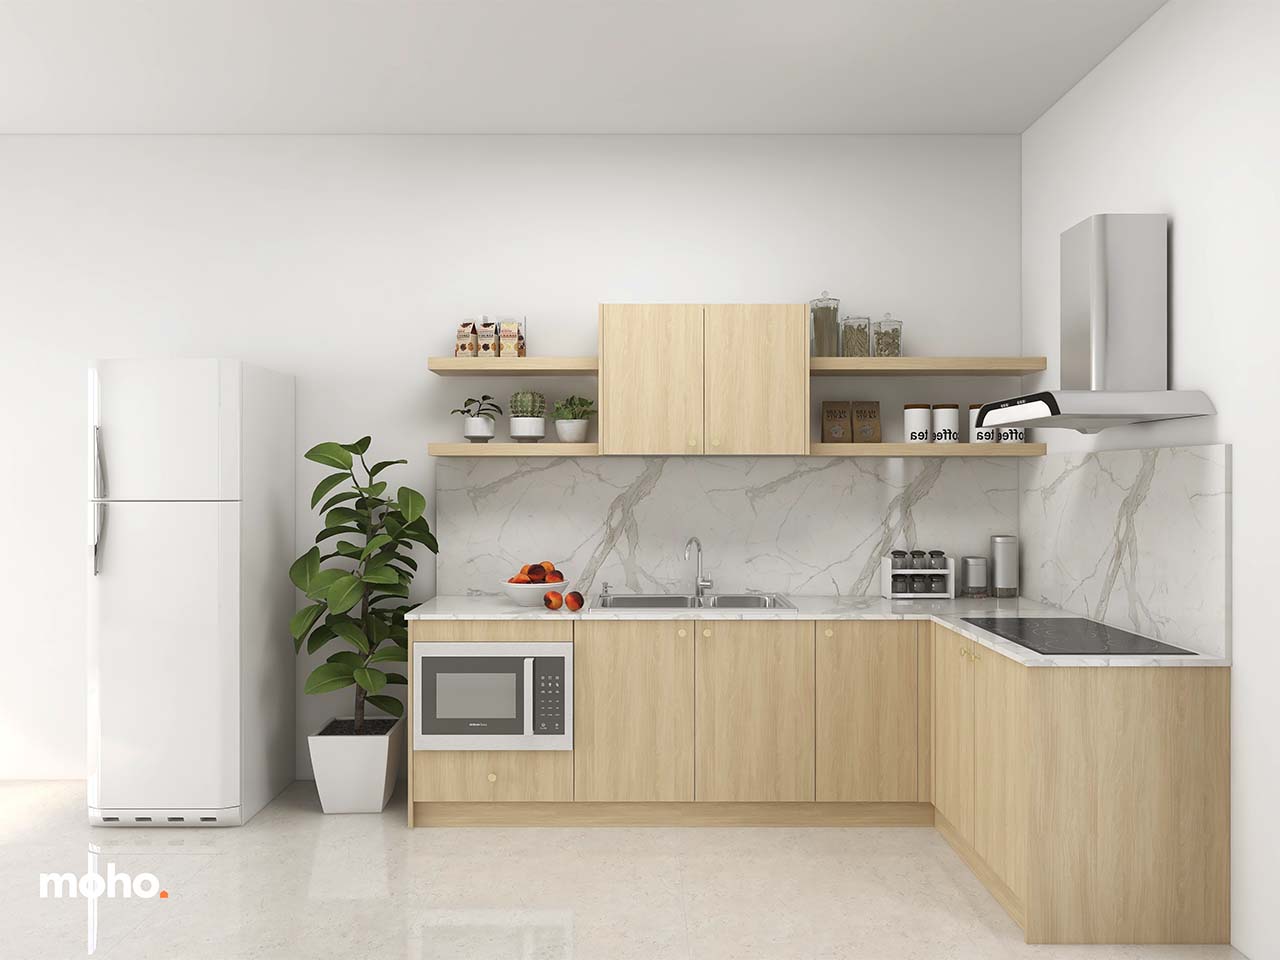 Tủ bếp là nơi quan trọng nhất trong căn nhà của bạn. Hãy đến với chúng tôi để có một thiết kế tủ bếp tuyệt đẹp và tiện nghi giúp giảm thiểu rủi ro trong quá trình nấu nướng. Sự hài lòng của khách hàng chính là động lực cho chúng tôi.